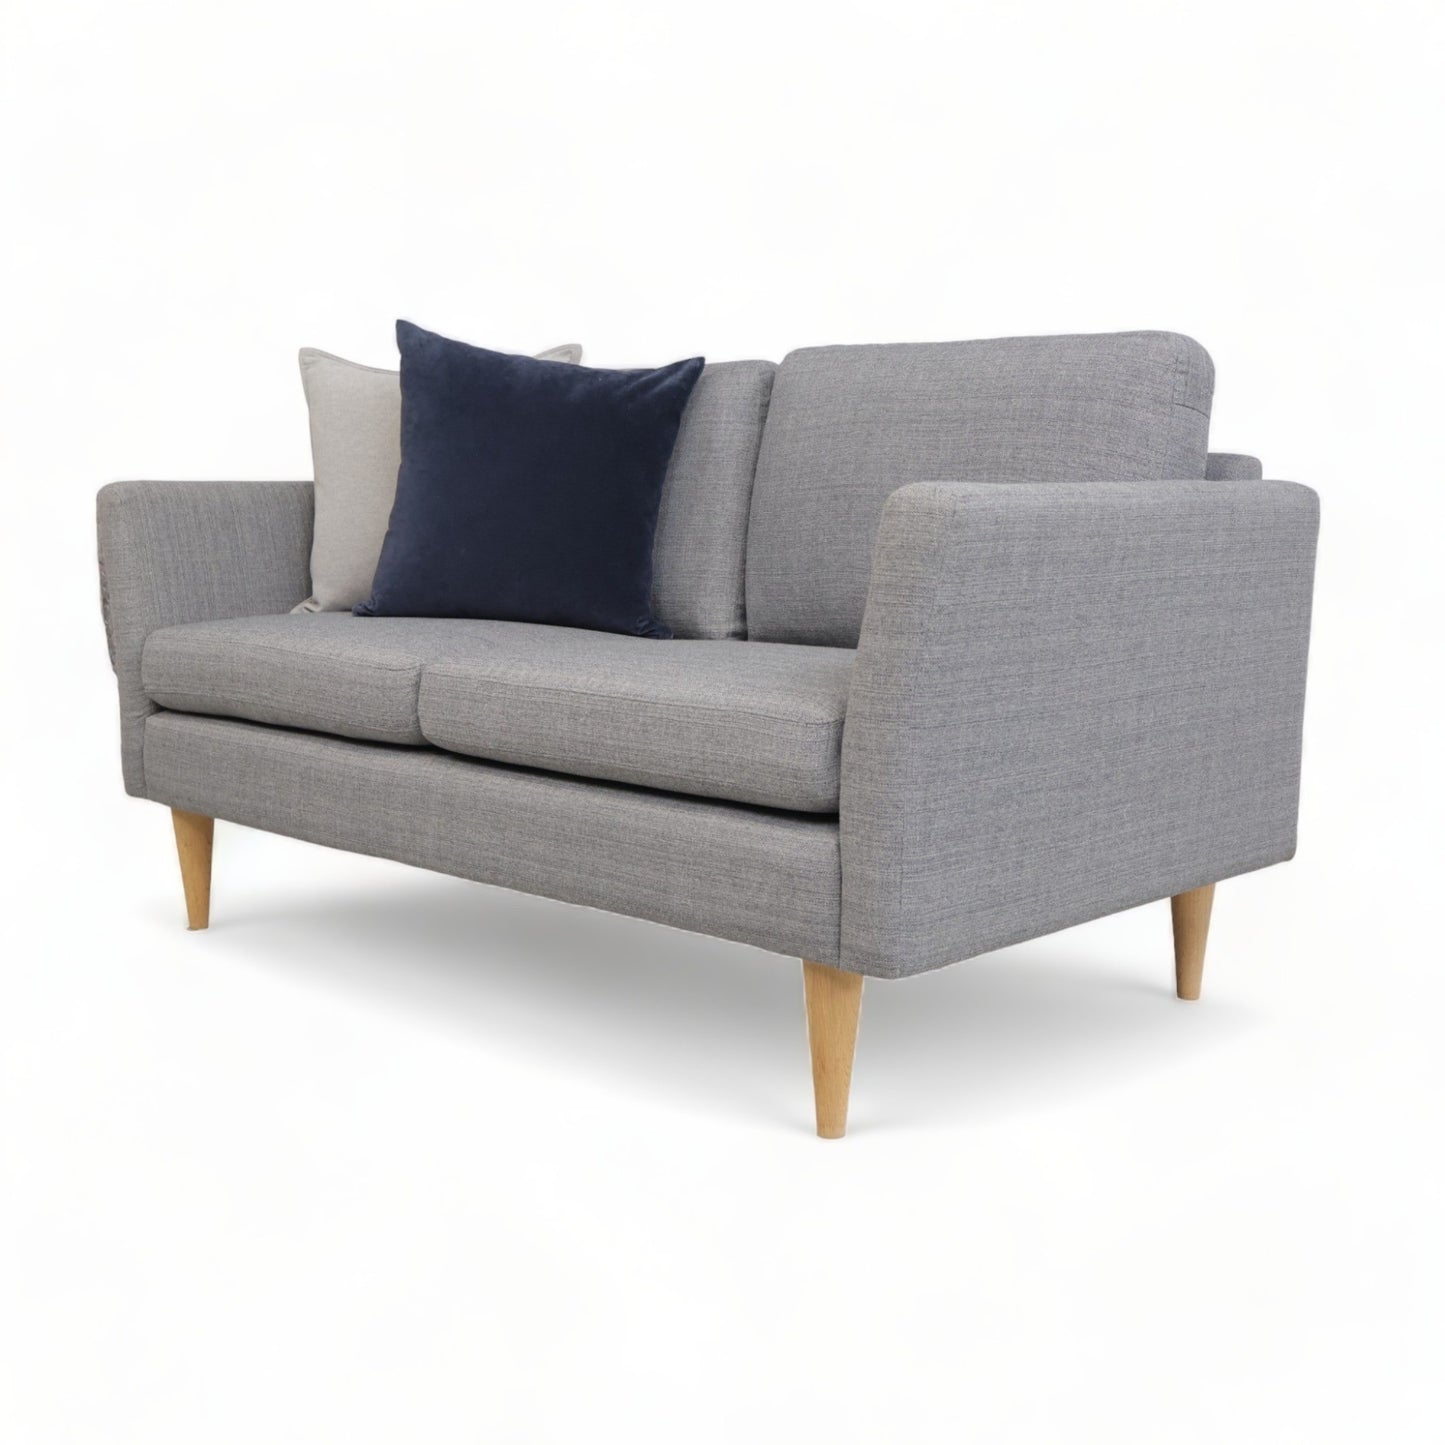 Nyrenset | Grå Hjort Knudsen 2-seter sofa